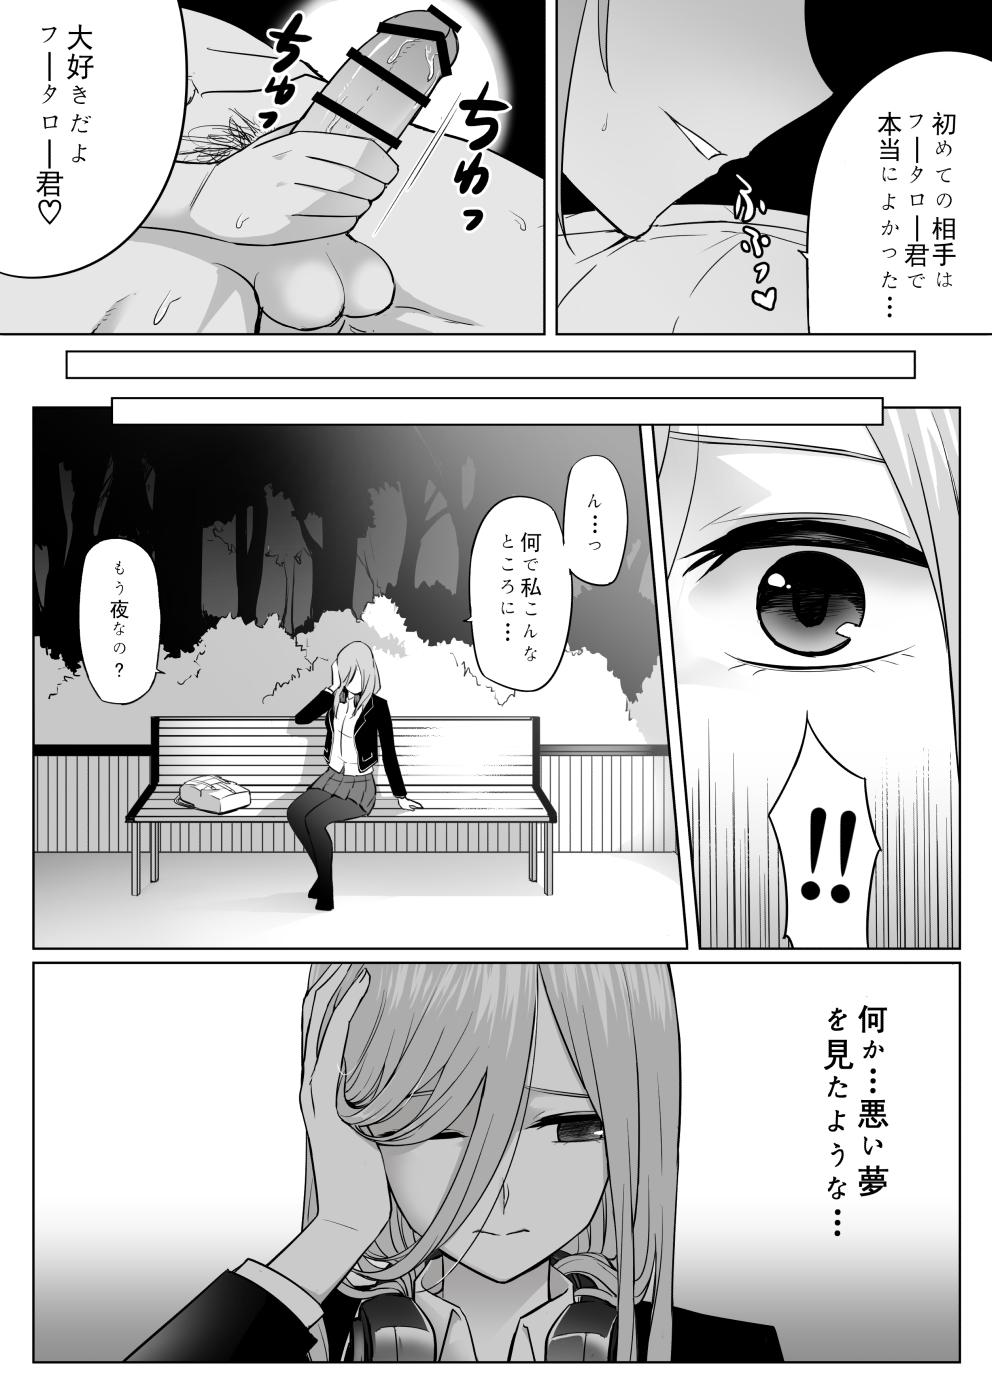 Oral Sex Nakano ke bijin shimai shojo soushitsu - Gotoubun no hanayome Rabuda - Page 30